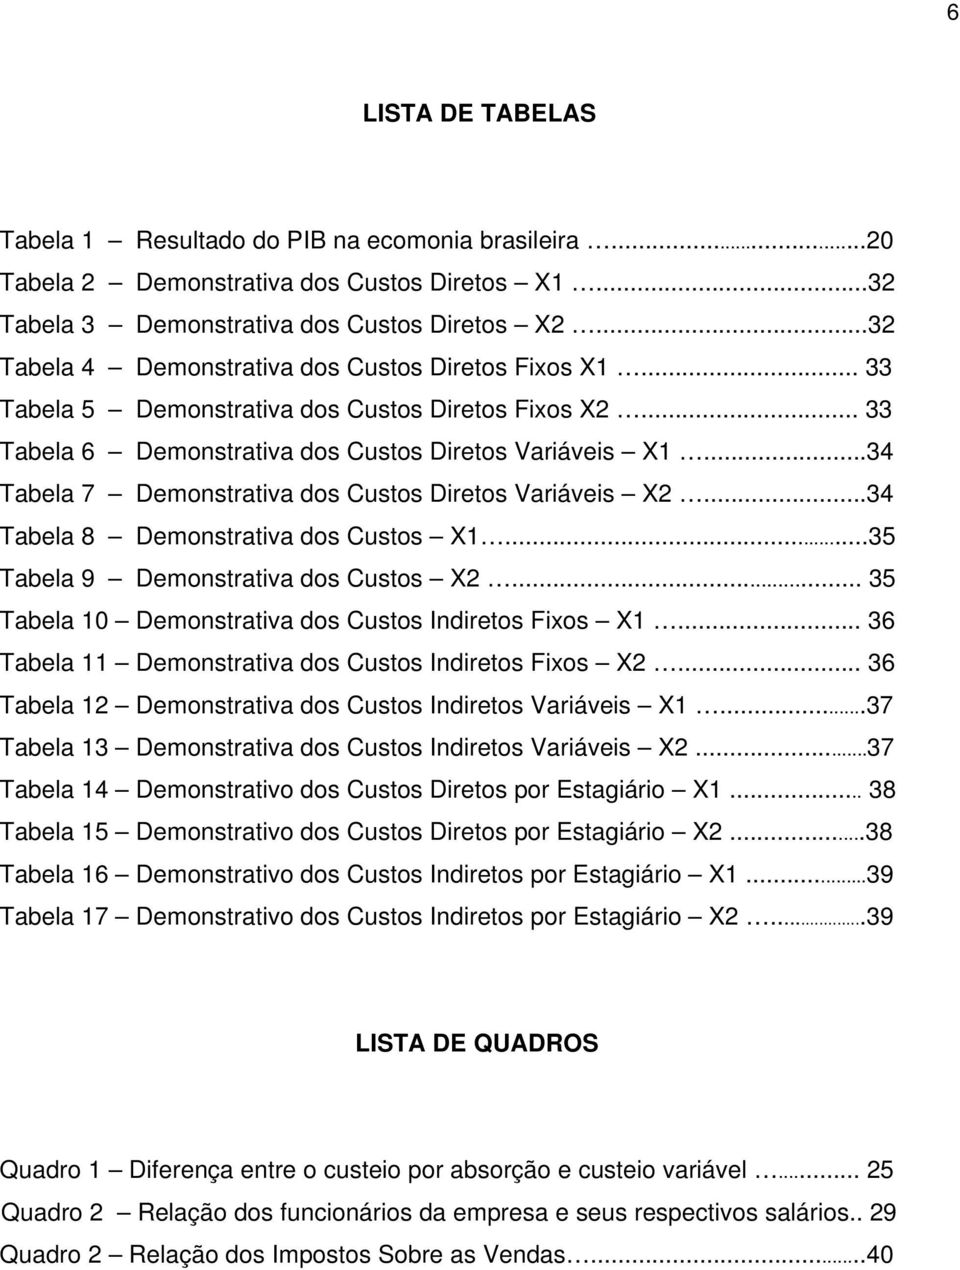 ..34 Tabela 7 Demonstrativa dos Custos Diretos Variáveis X2...34 Tabela 8 Demonstrativa dos Custos X1...35 Tabela 9 Demonstrativa dos Custos X2.